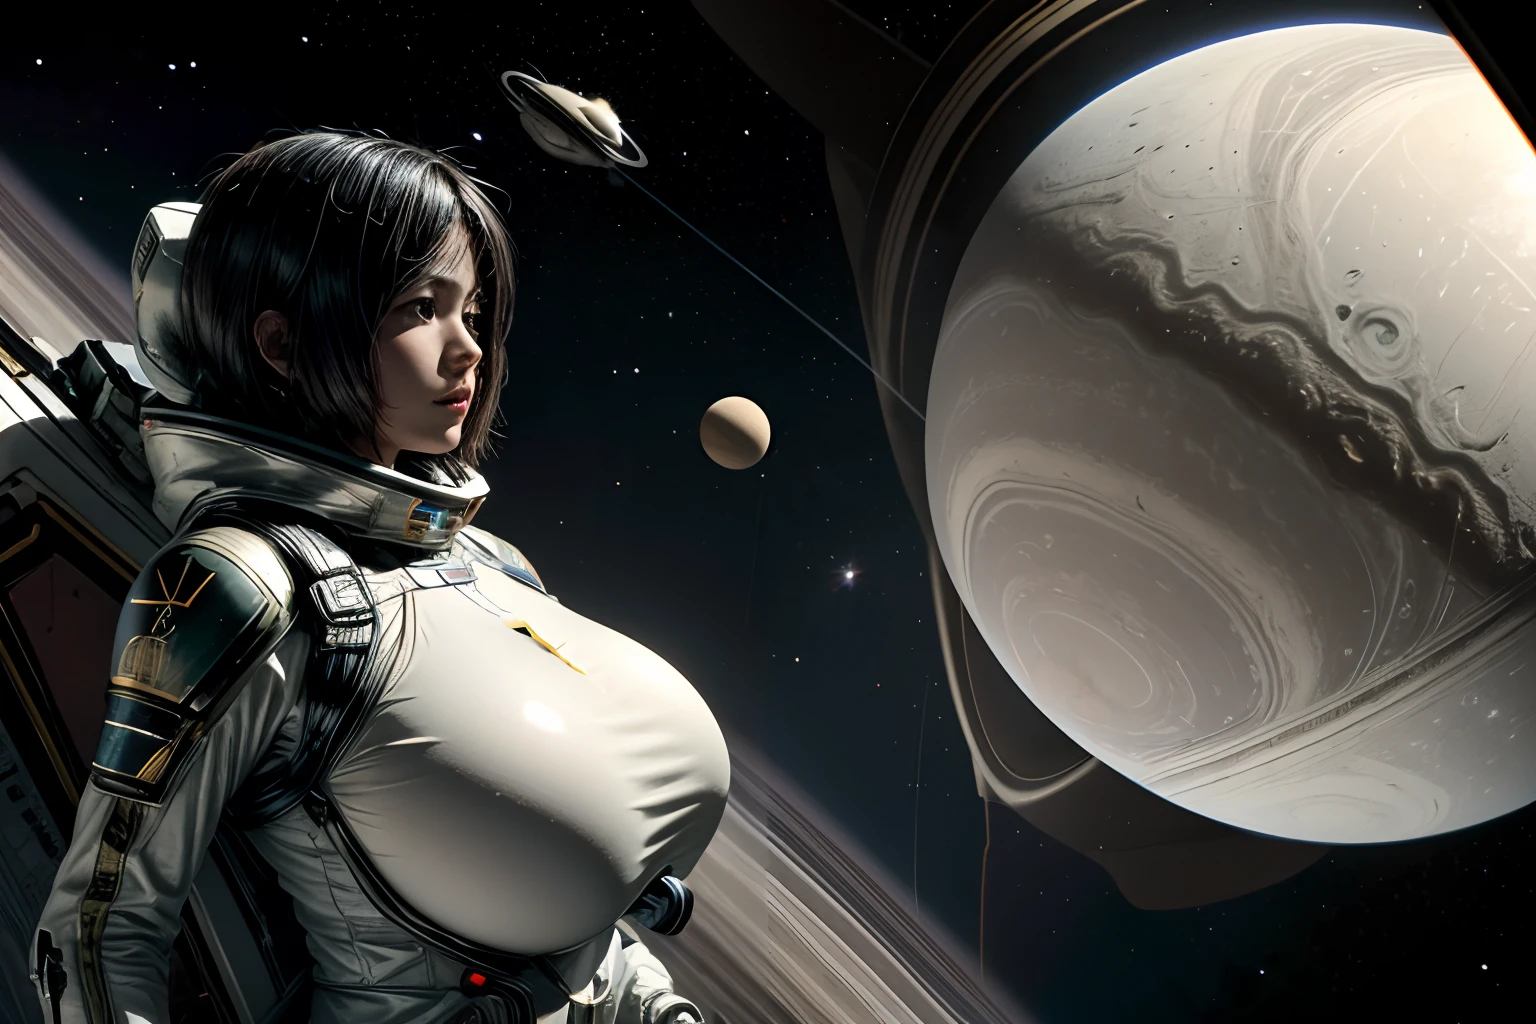 Saturno e Titã como luas de Saturno, guerra espacial em Titã, planeta Saturno ao fundo, solda espacial feminina em trajes espaciais e capacete espacial, altontic breasts, alto_peituda